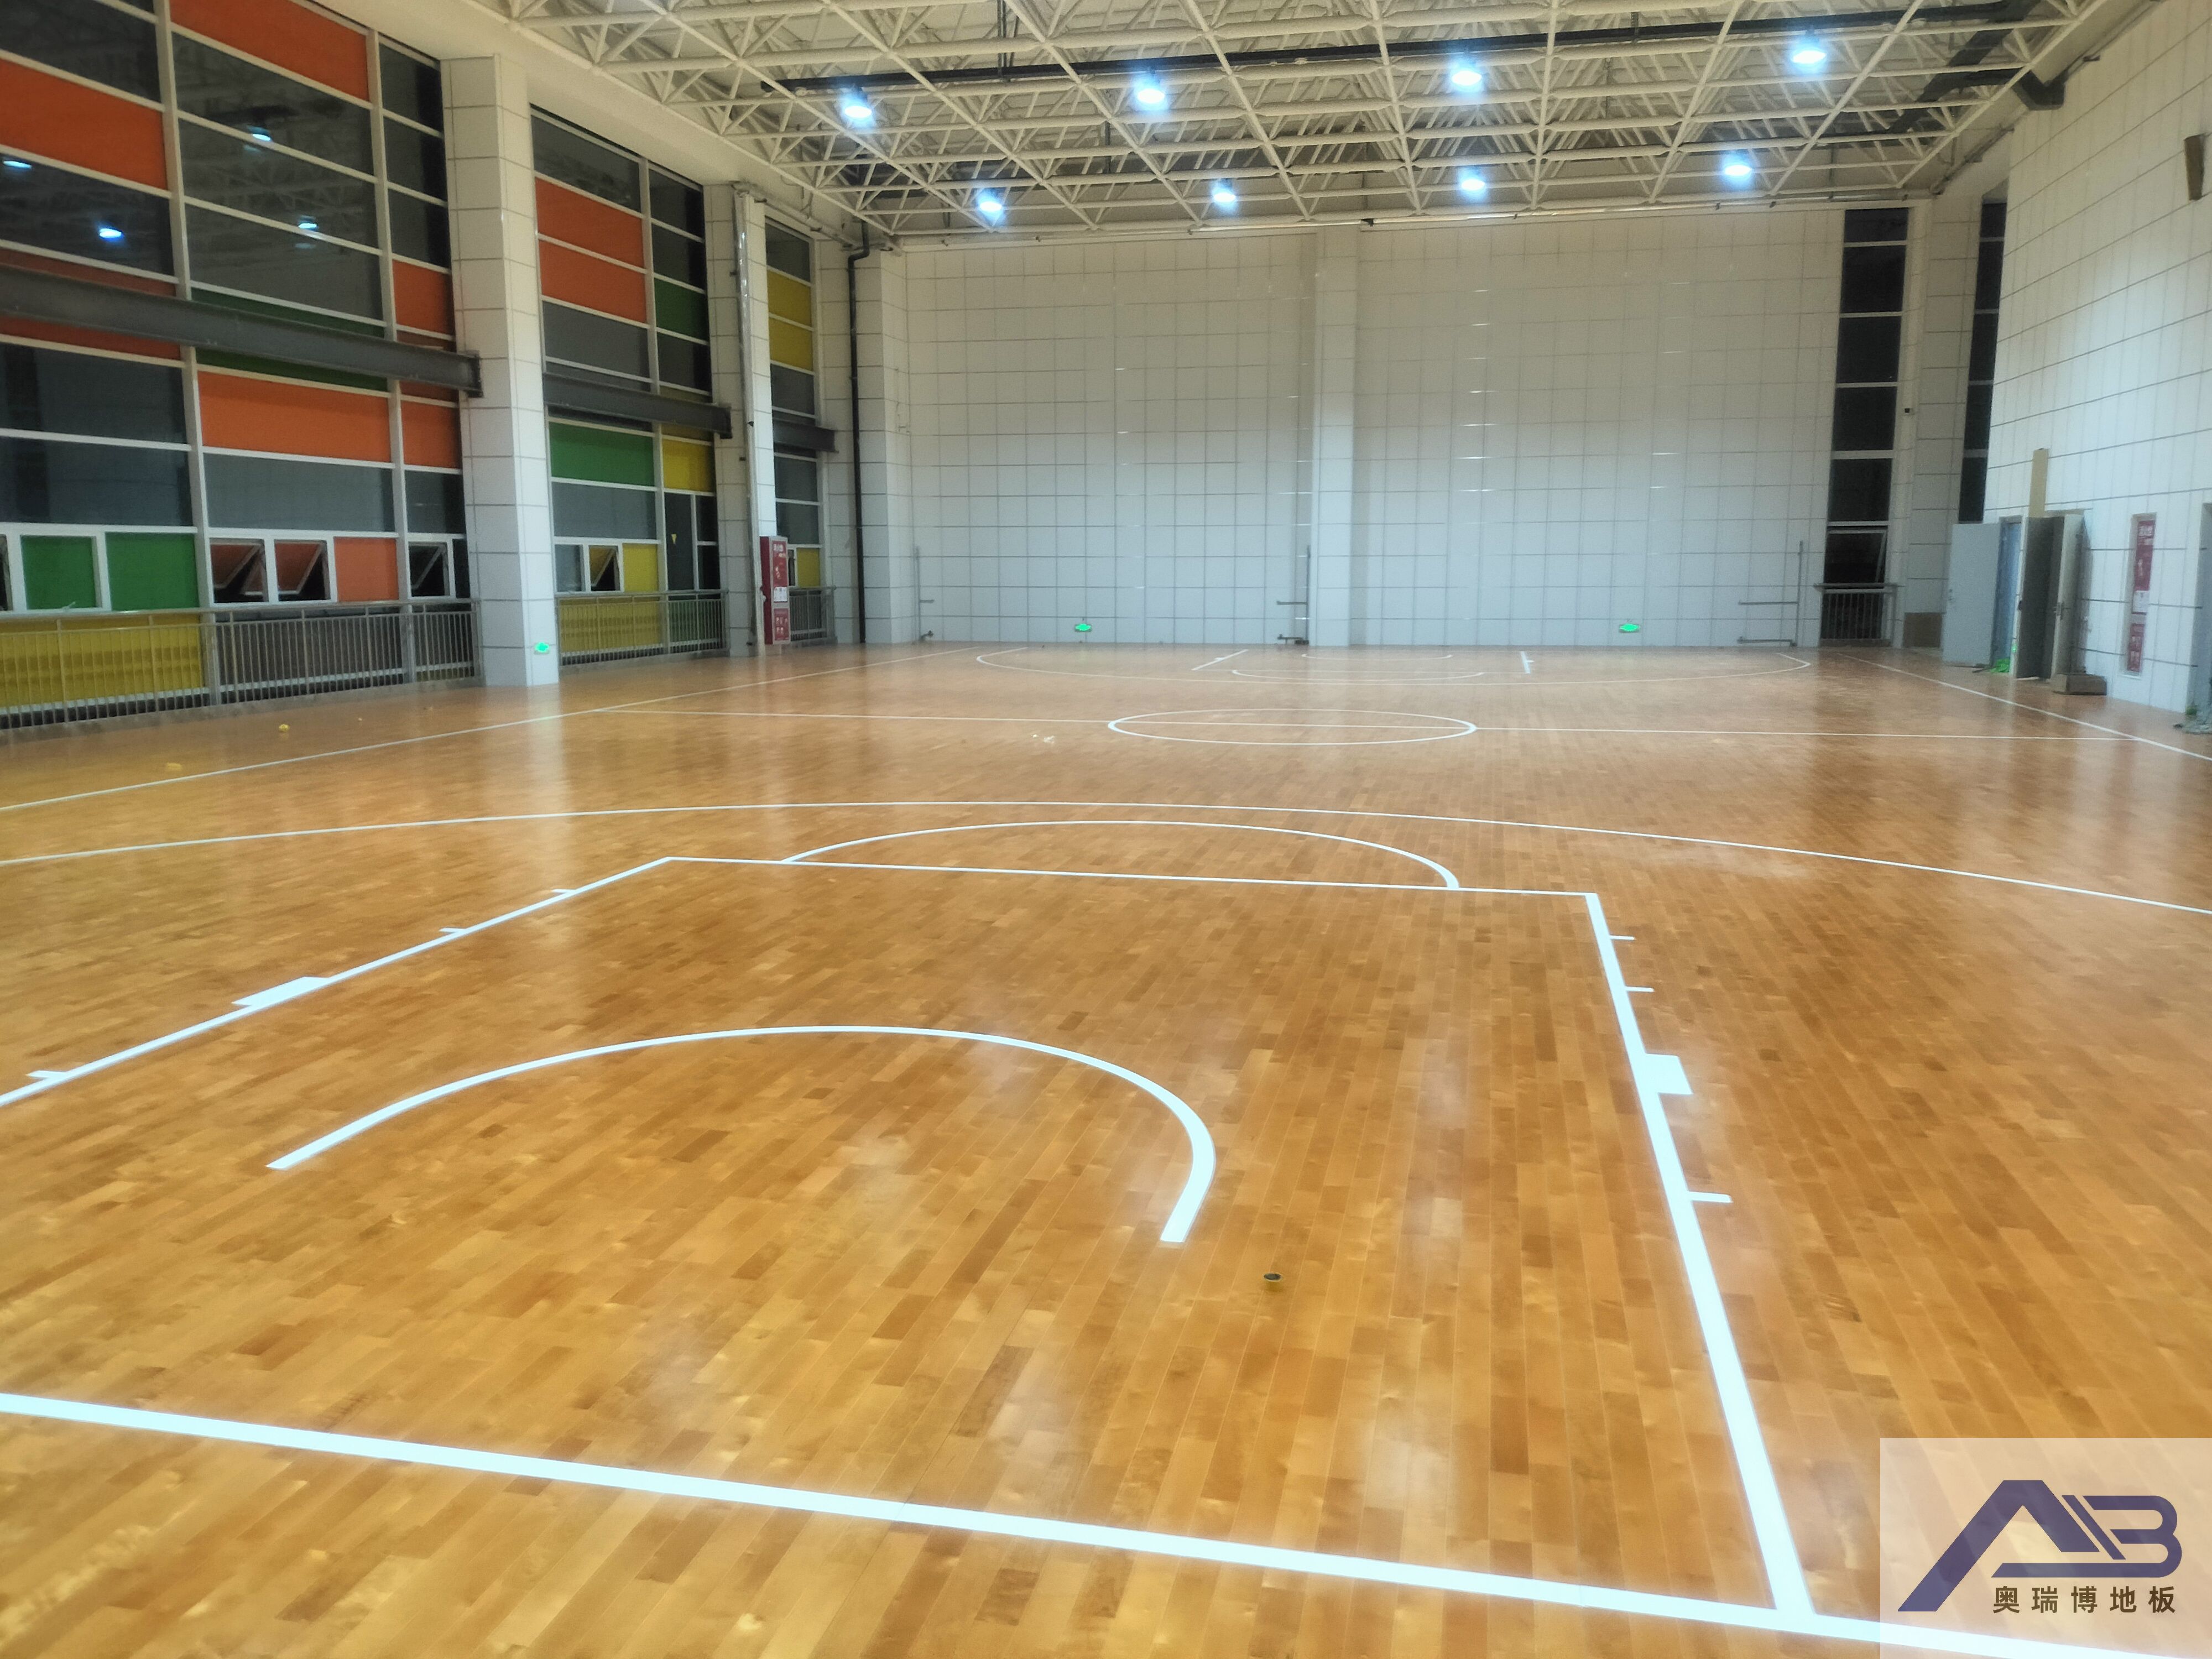 涿州市体育馆选择奥瑞博运动木地板作为场馆的地面材料